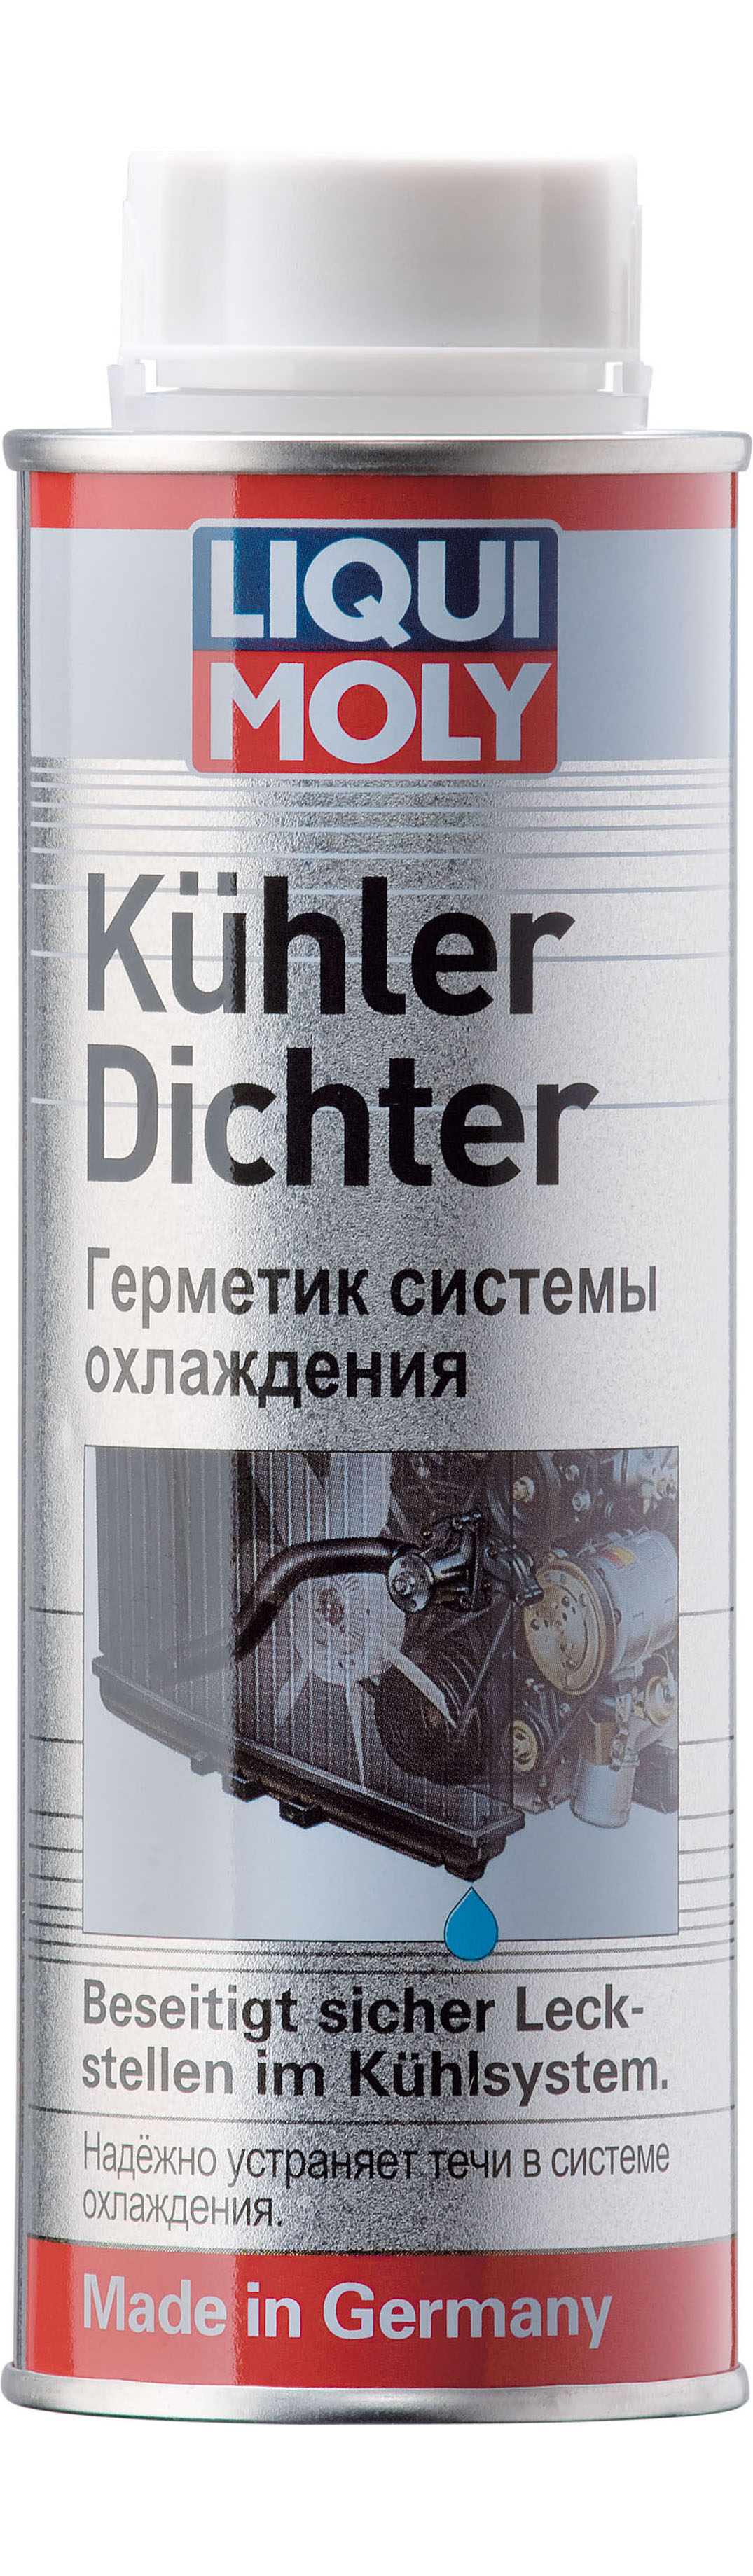 Герметик системы охлаждения LIQUI MOLY Kuhlerdichter (0,25 литра)